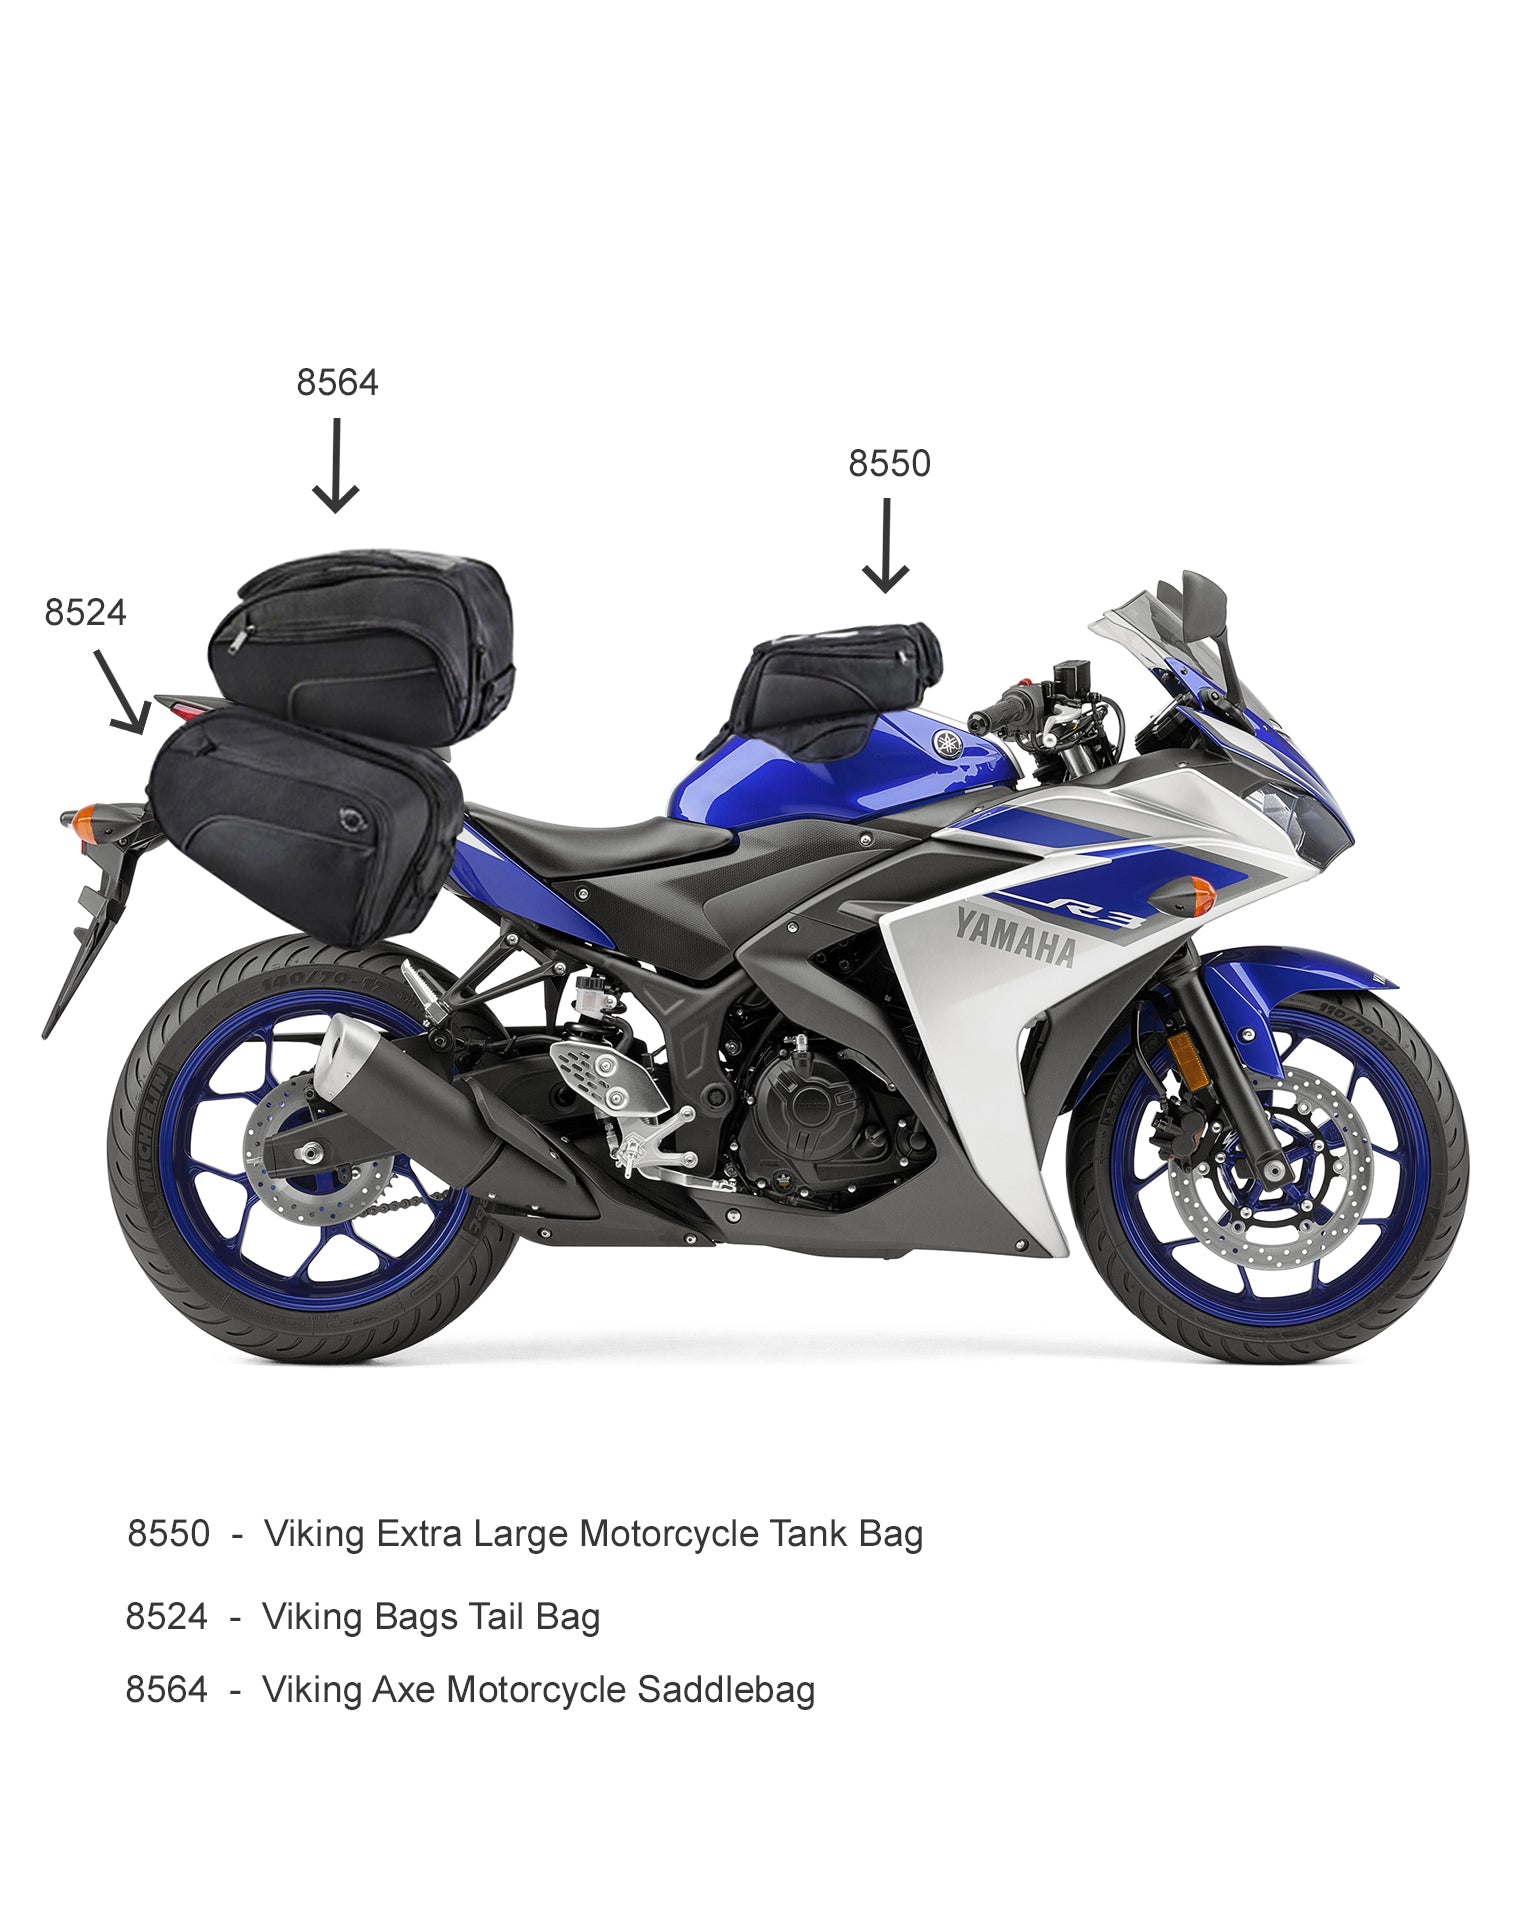 Viking AXE Small Honda Motorcycle Tail Bag Combination